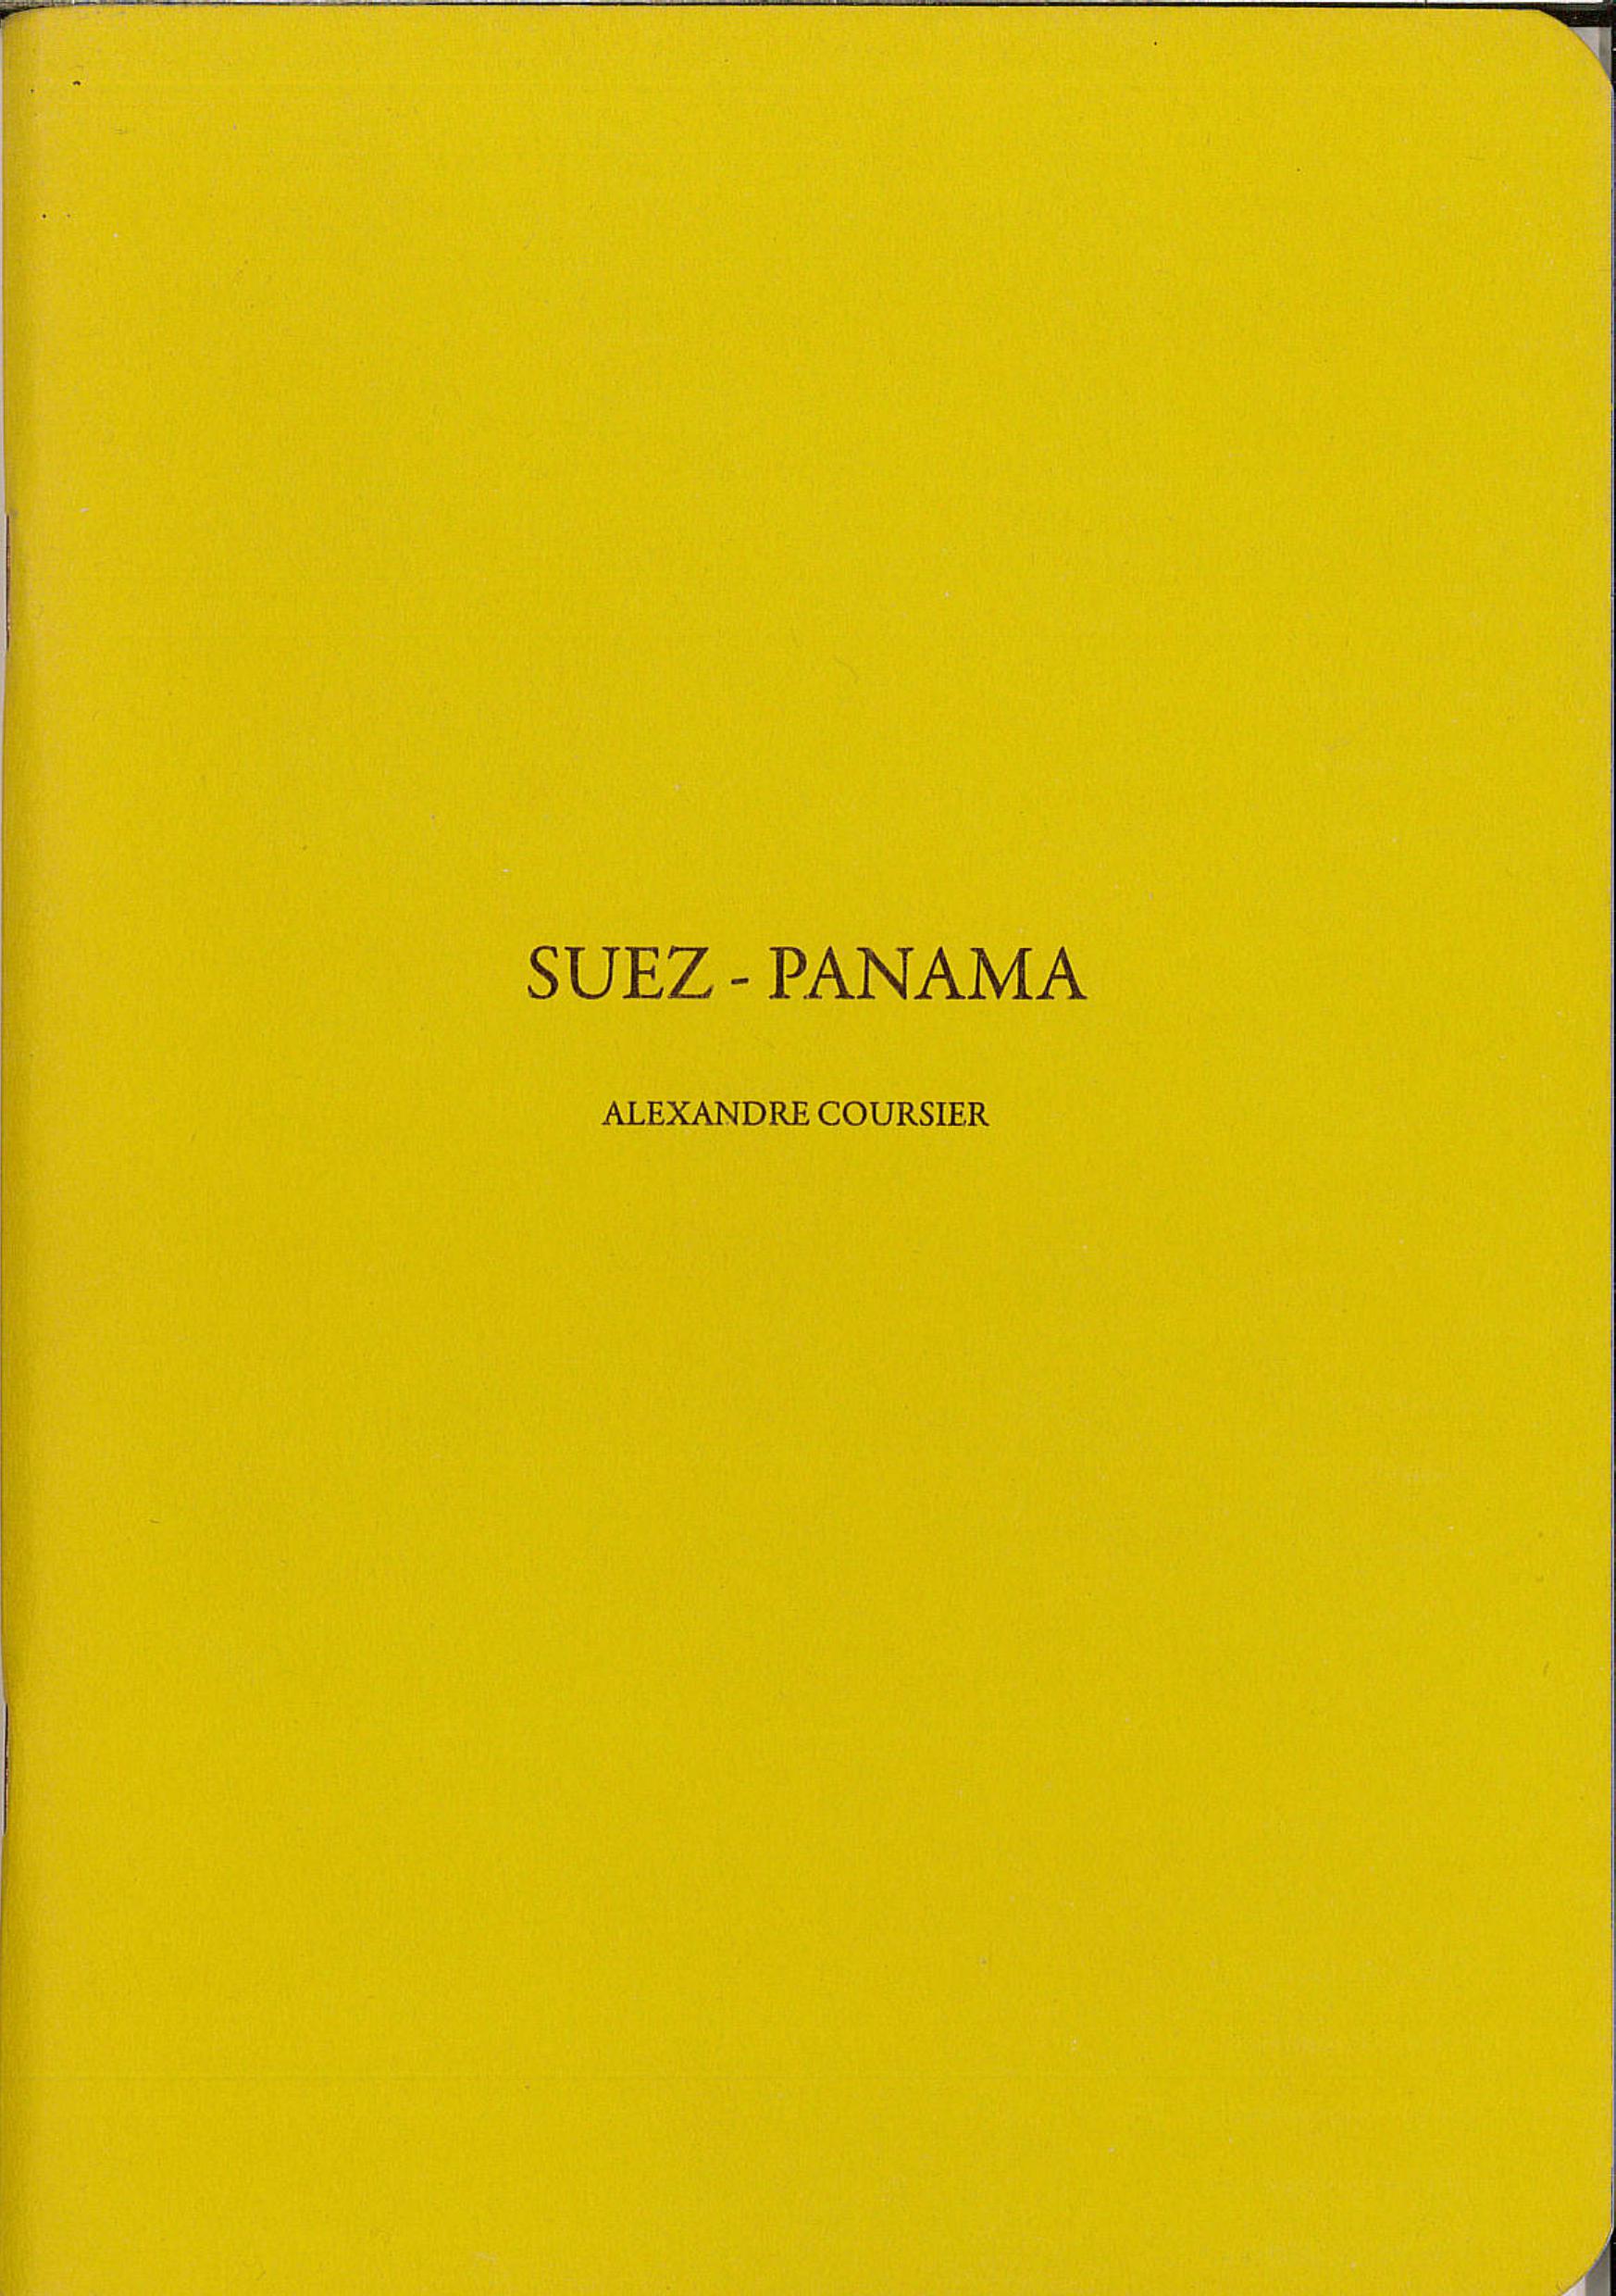 Suez-Panama cover